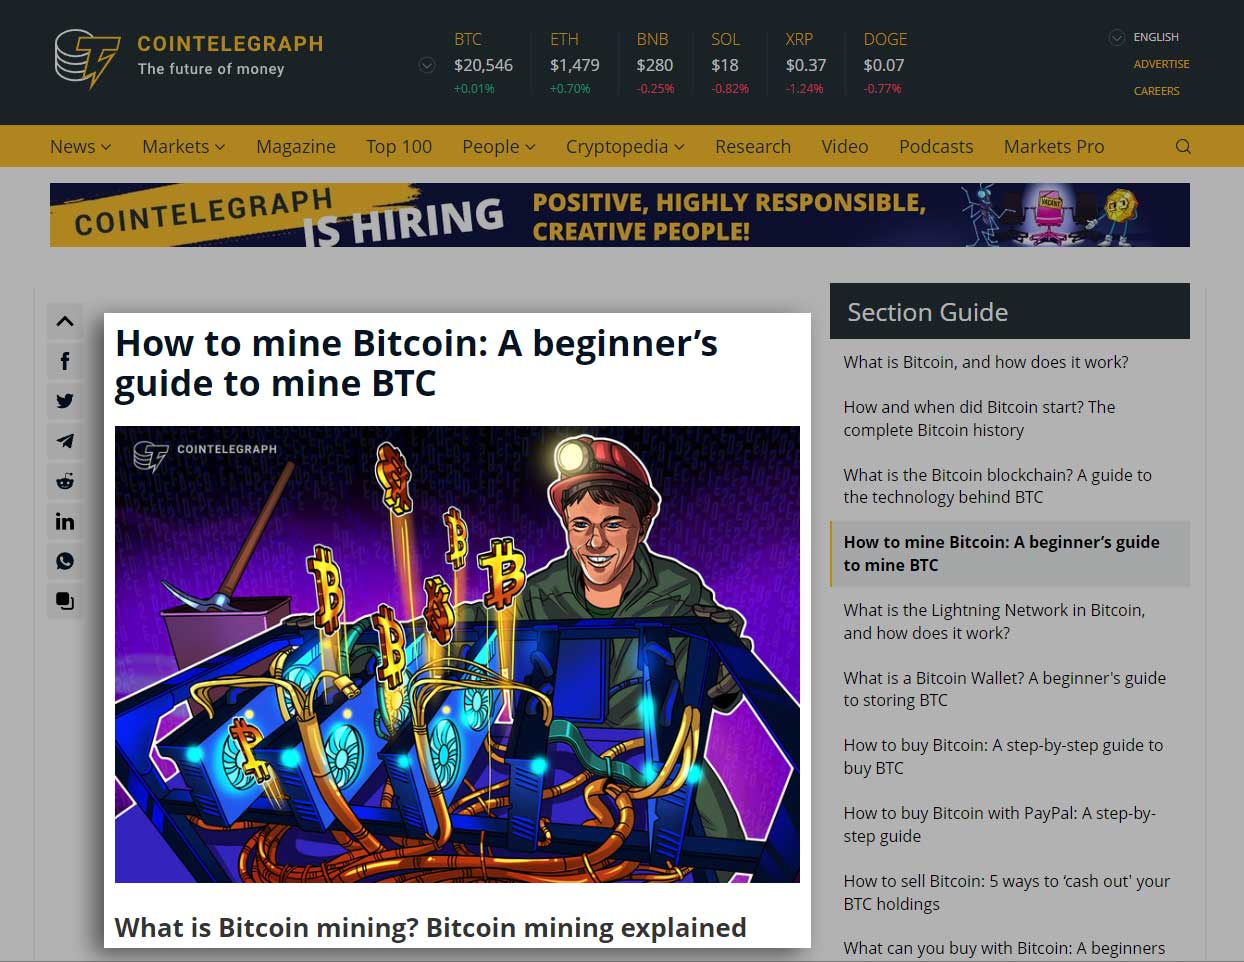 screenshot of bitcoin from cointelegraph website